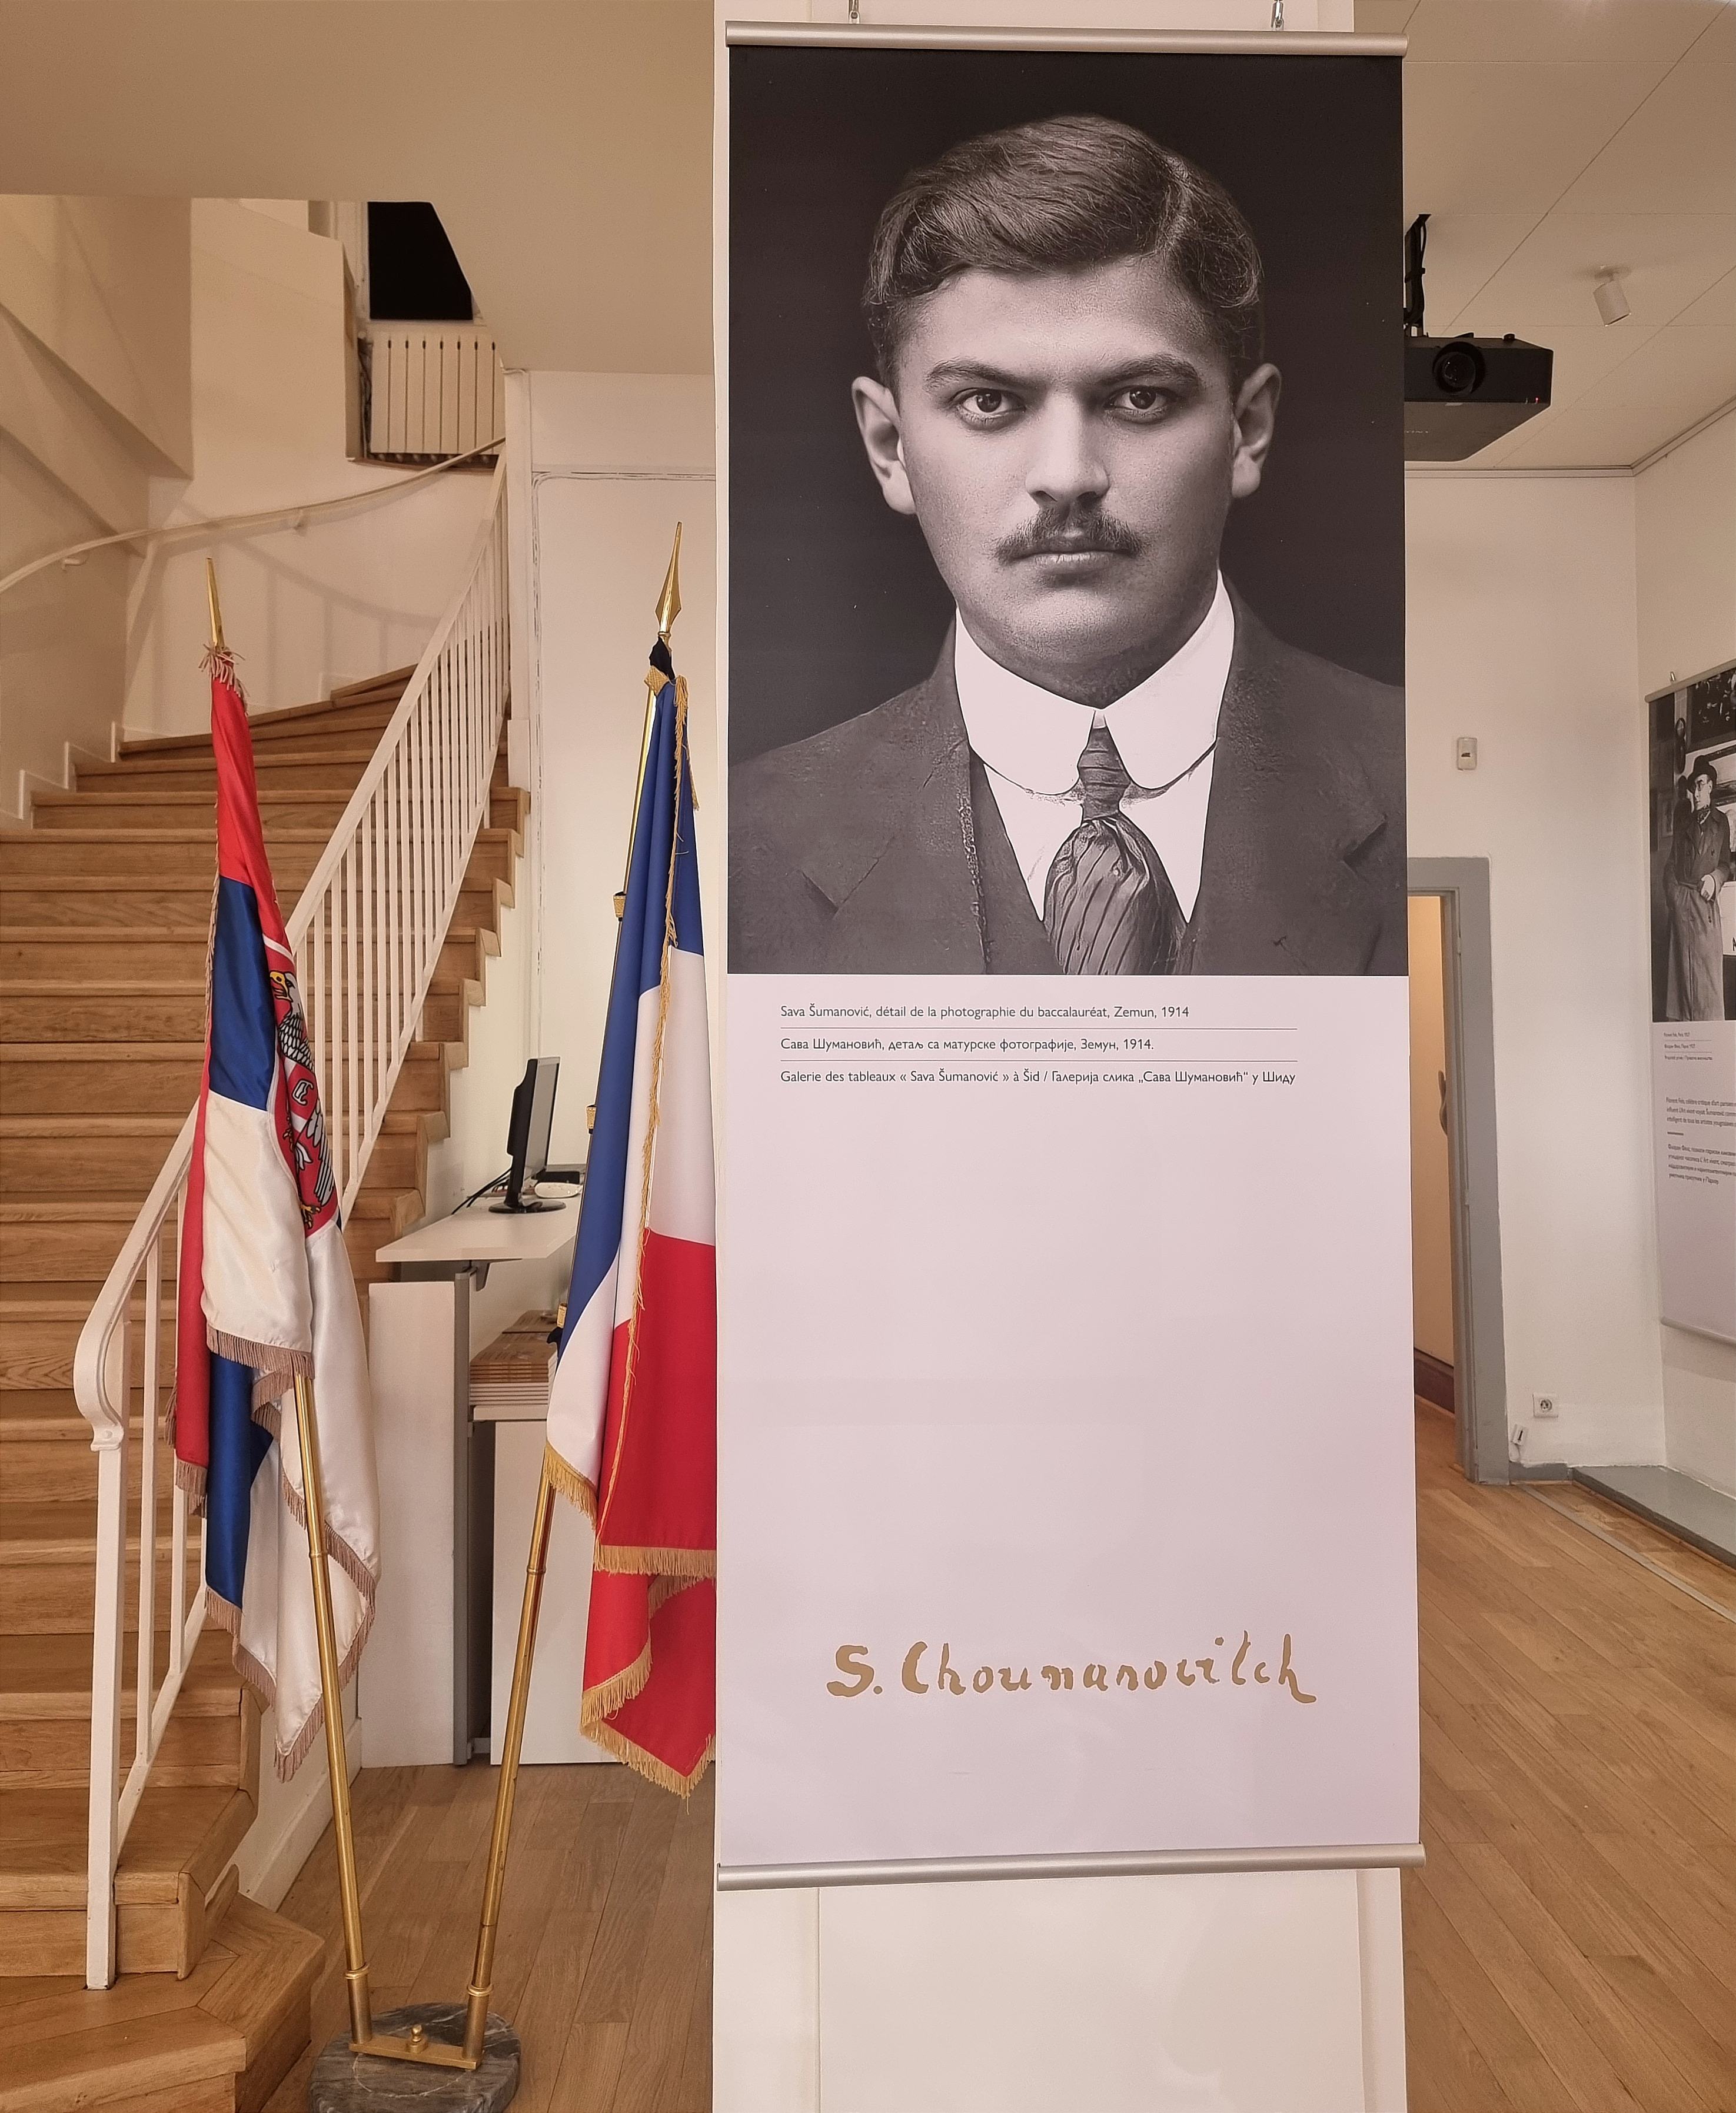 Гојковић поводом 50 година постојања Културног центра Србије у Паризу отворила изложбу посвећену Сави Шумановић